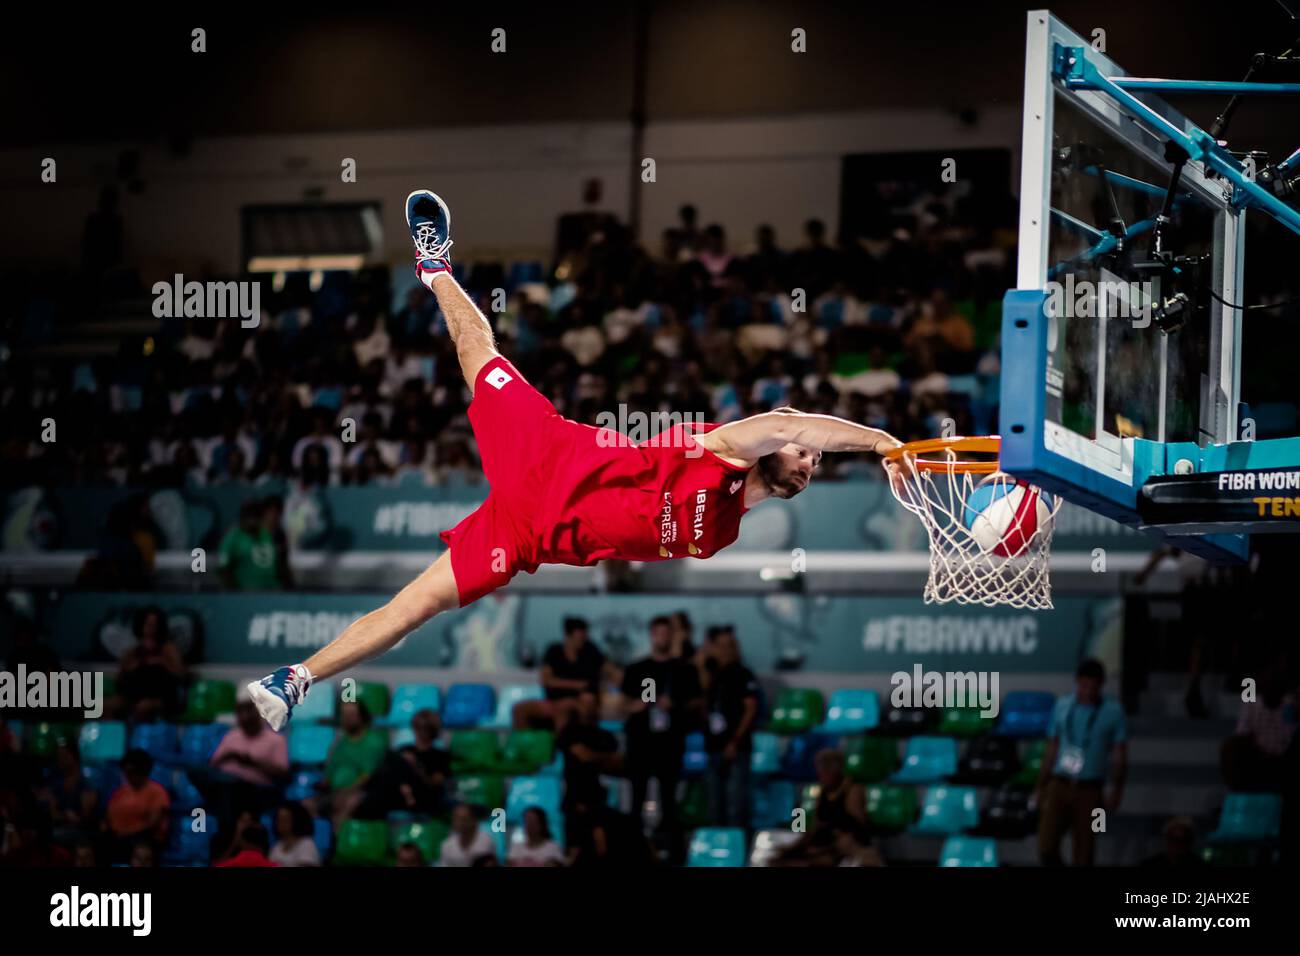 Ténérife, Espagne, 26 septembre 2018: Un joueur de basket-ball saute haut et tourne le ballon dans le panier lors d'un spectacle acrobatique de basket-ball Banque D'Images